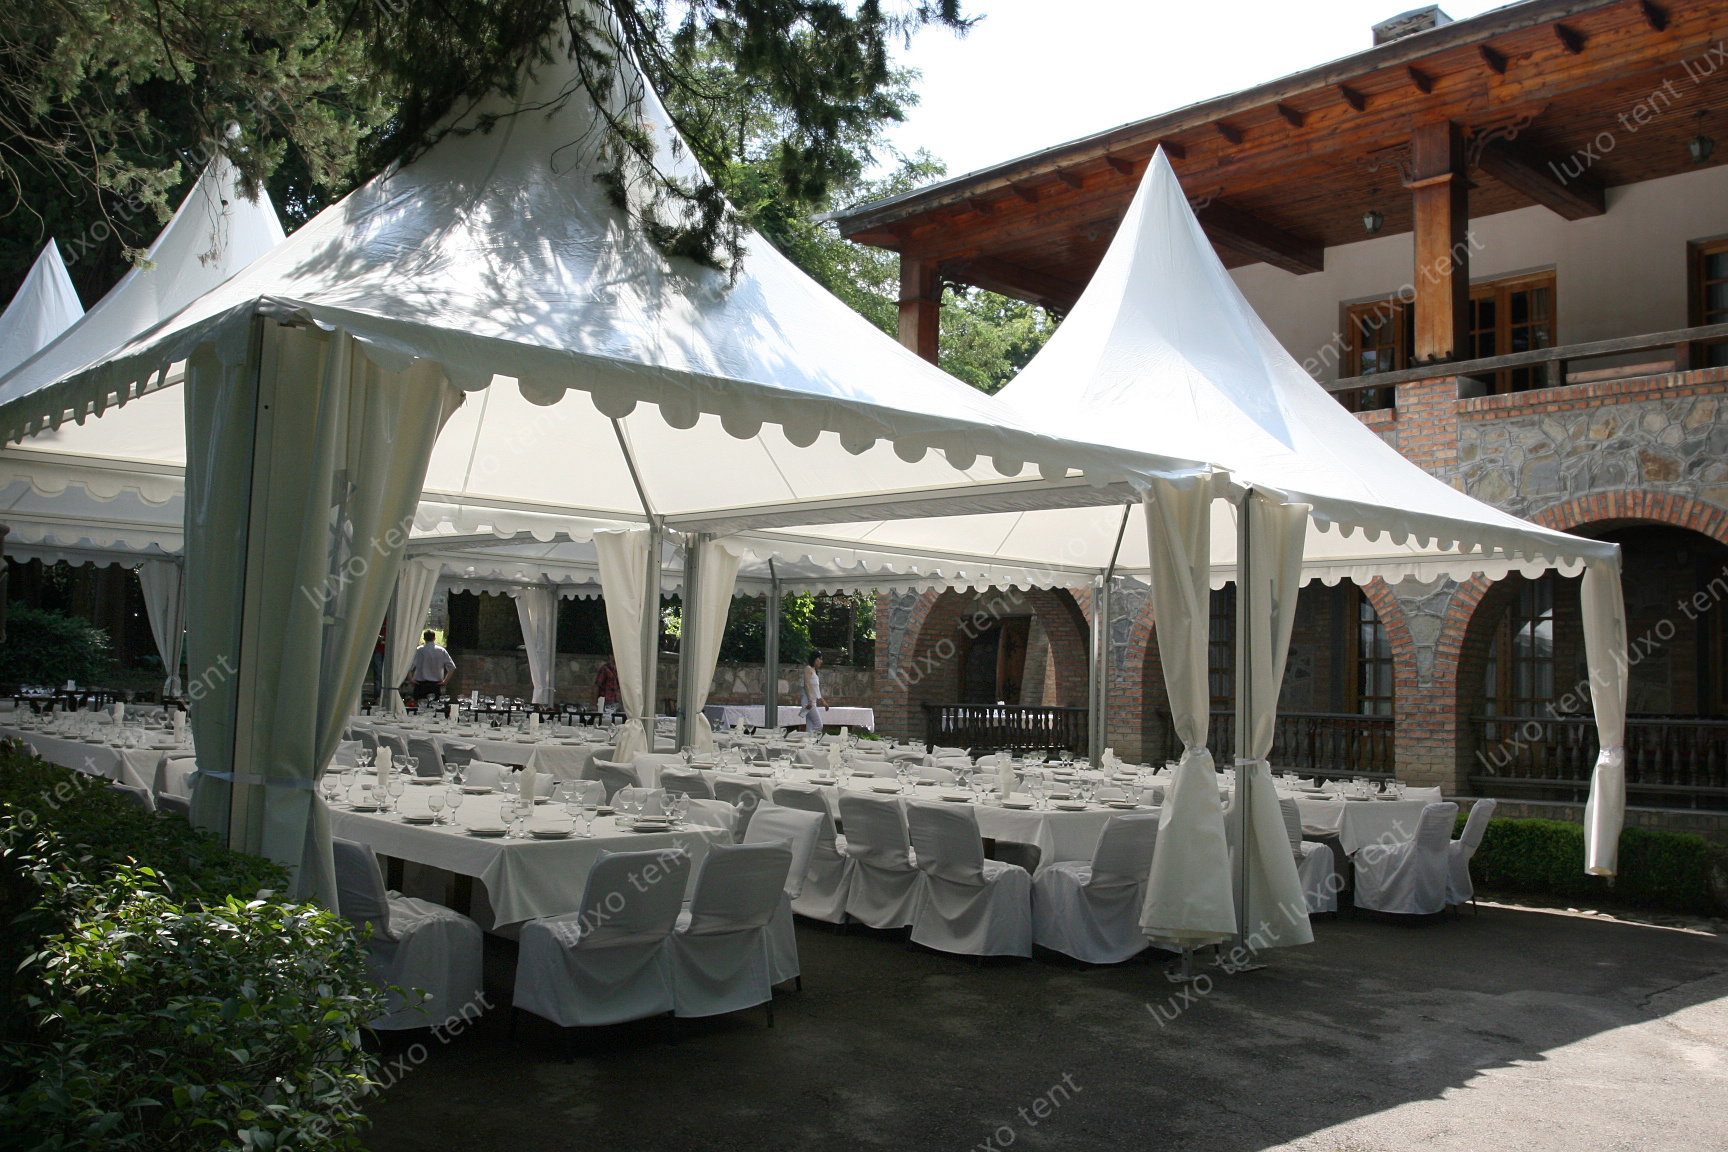 alumínium vázas pvc baldachinos pagoda sátor rendezvény party esküvői sátor